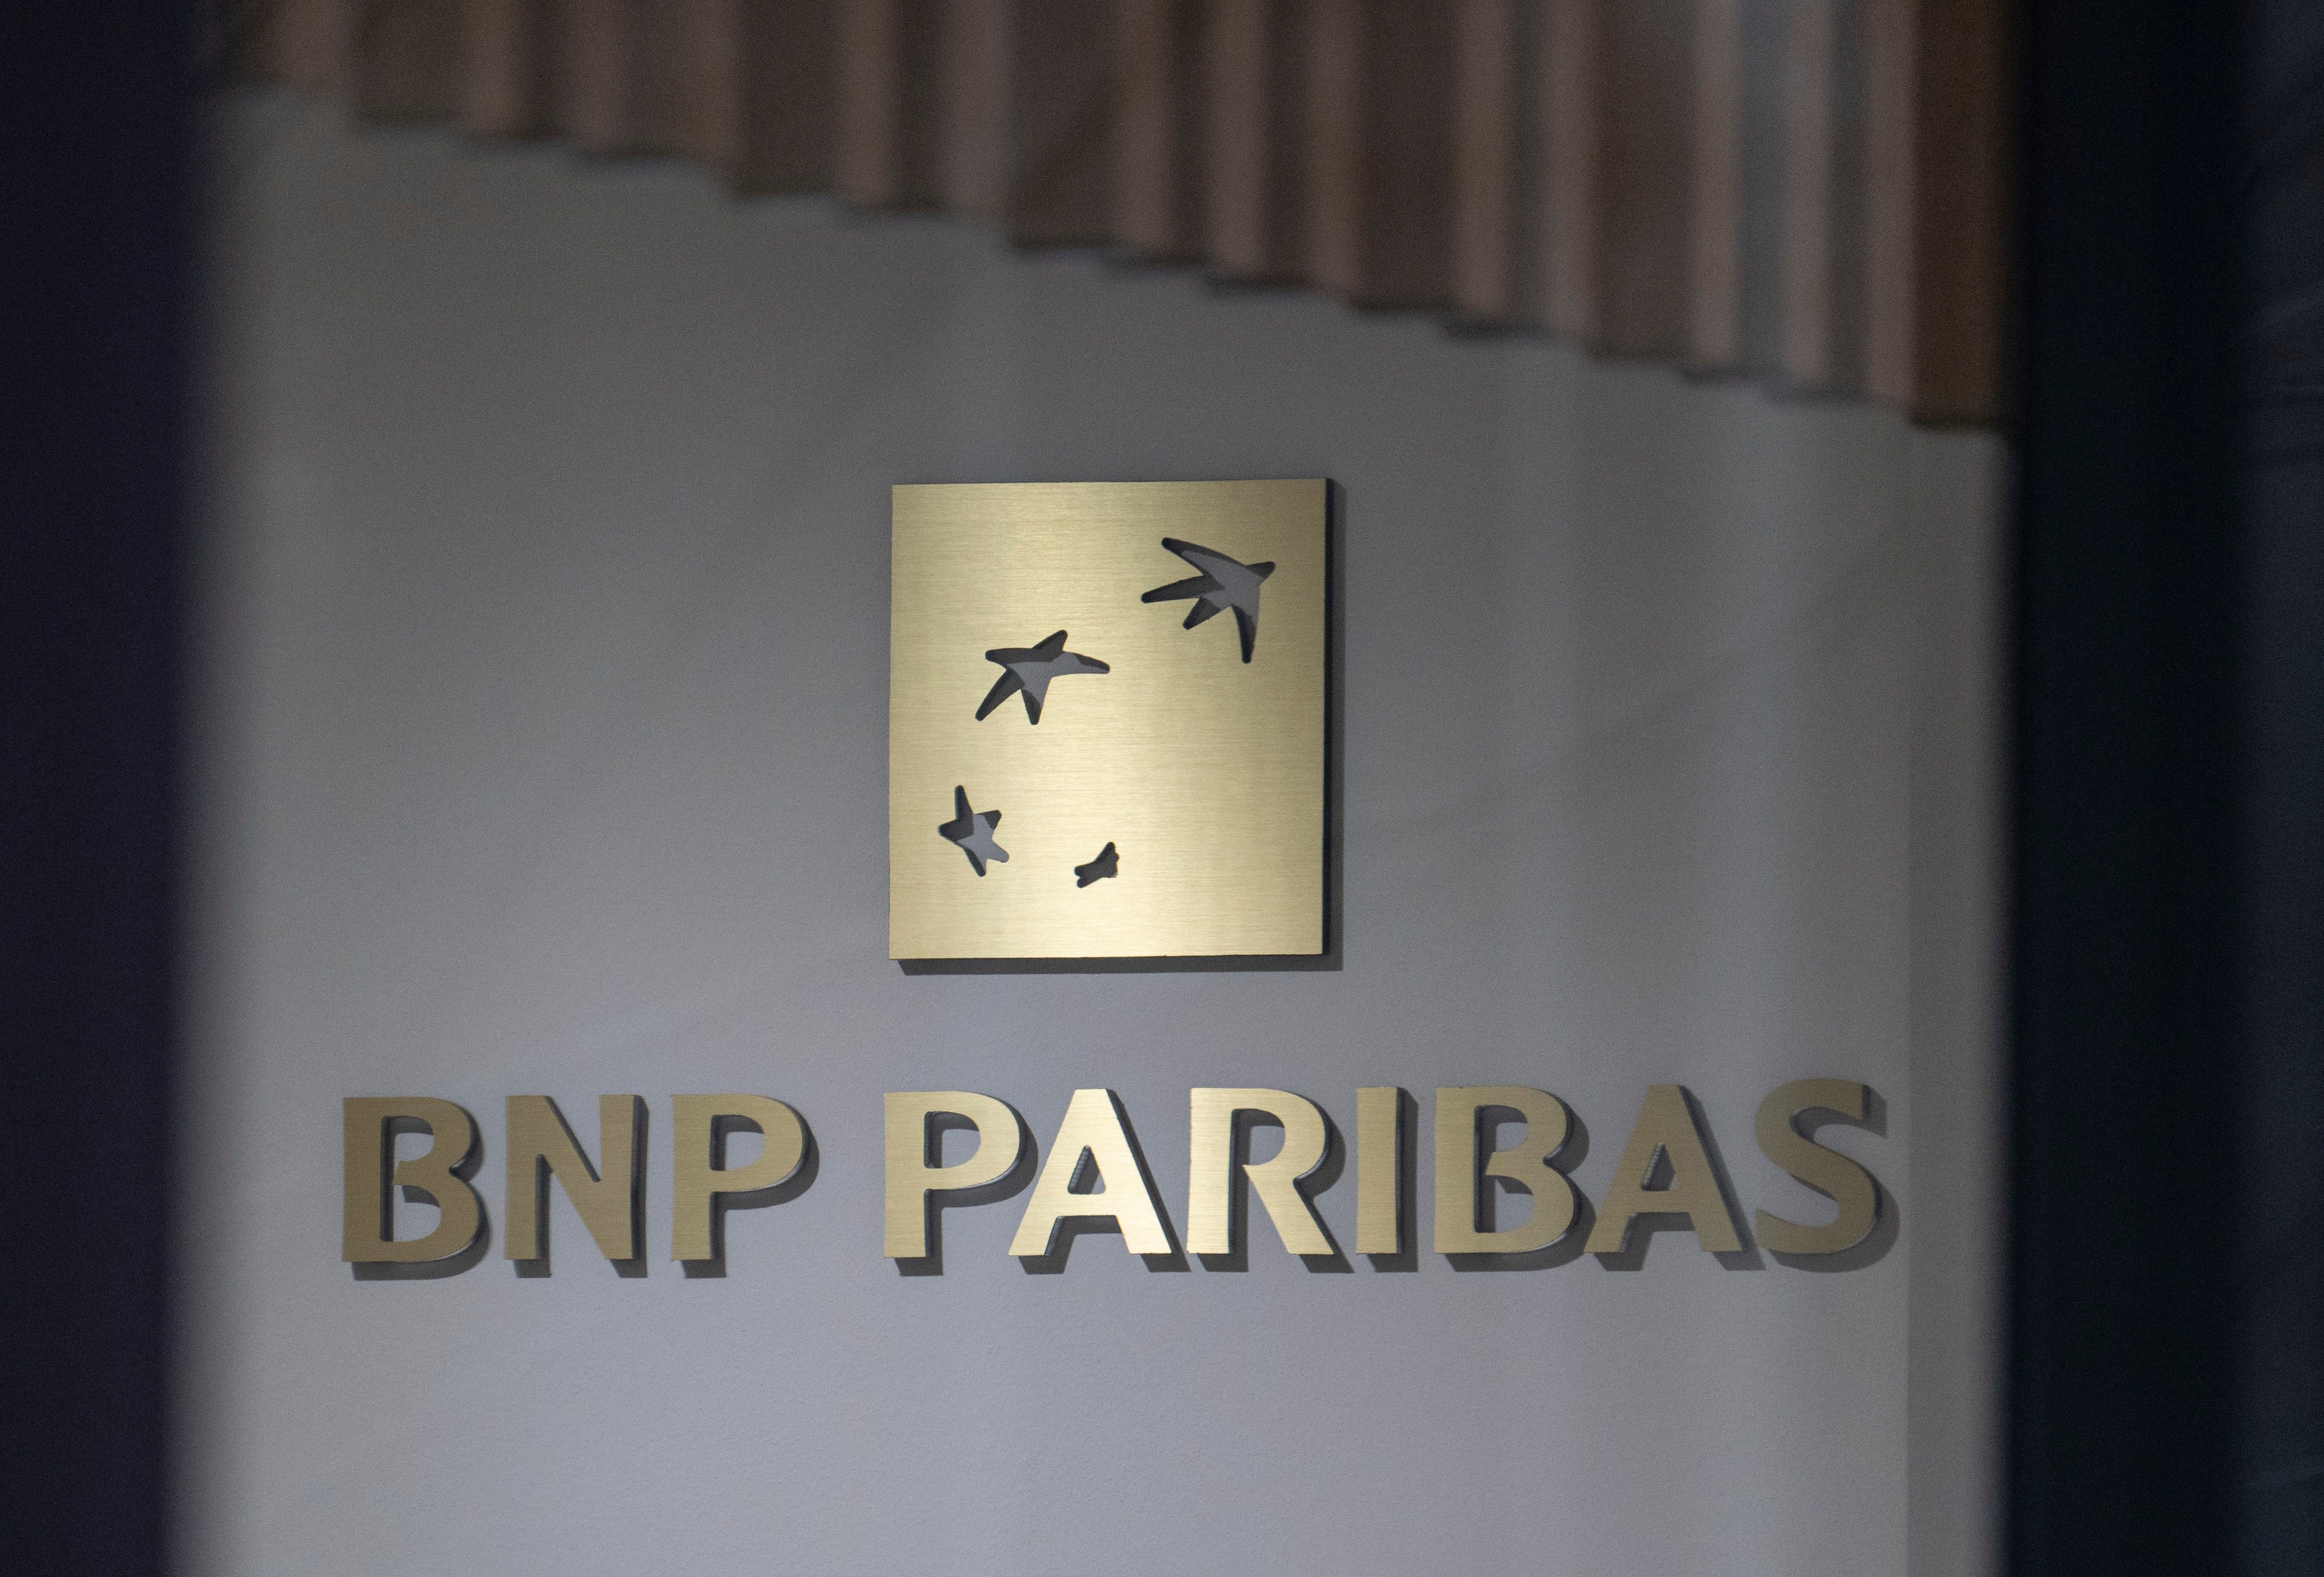 Cum-ex-Skandal - Durchsuchung bei der BNP Paribas zu Cum-Ex-Aktiendeals